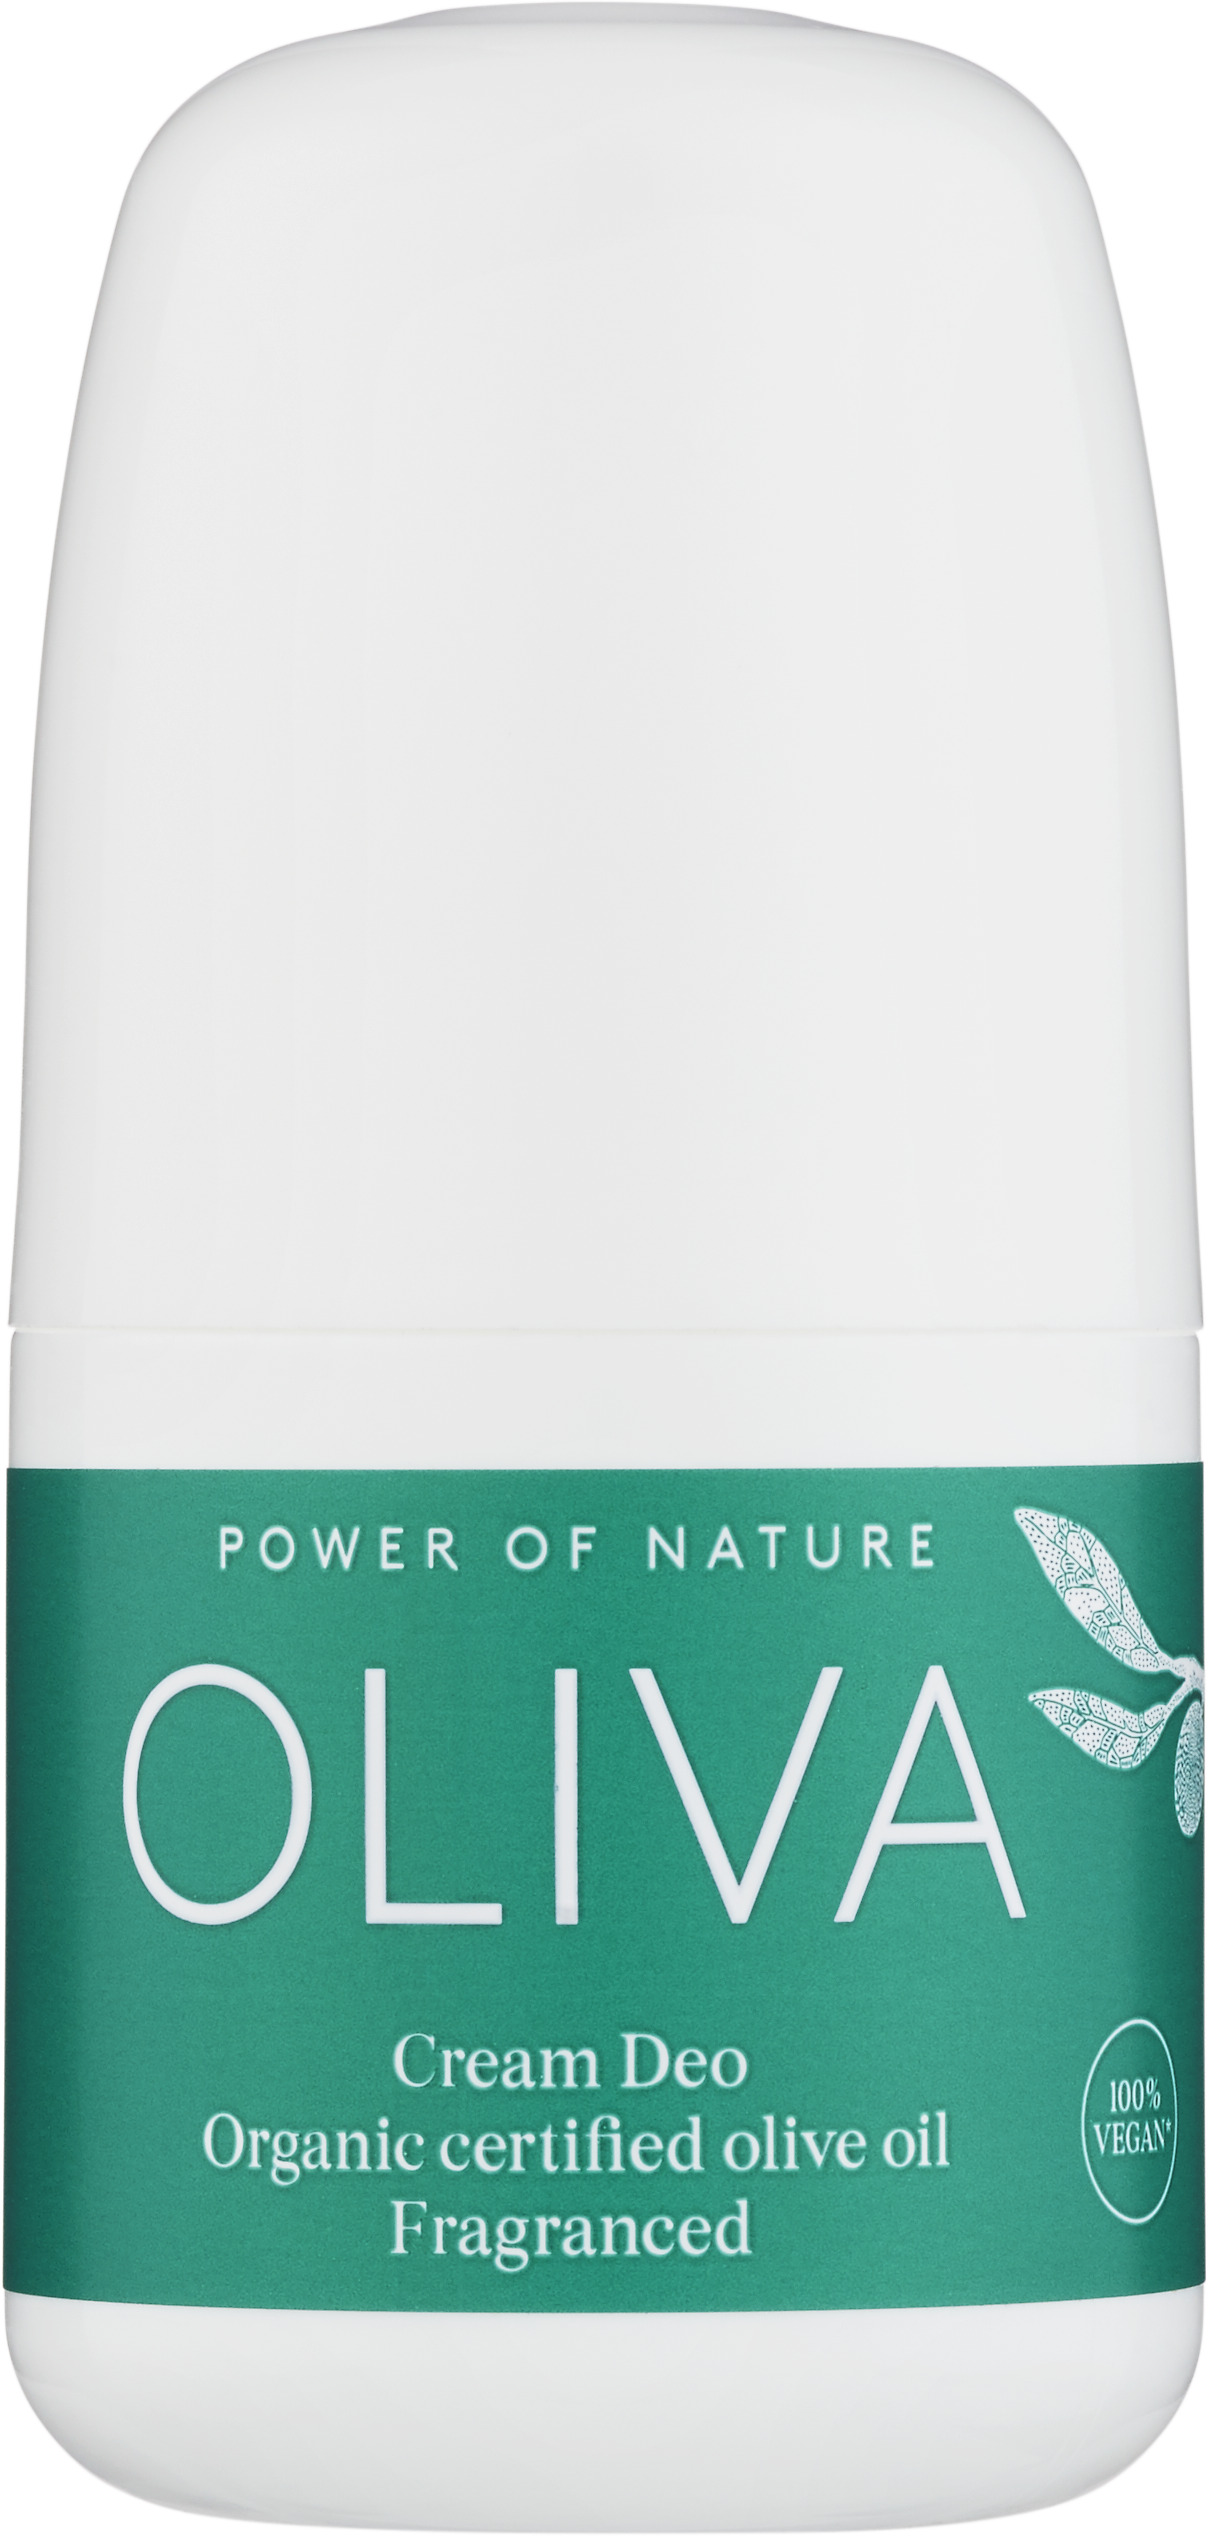 Oliva Cream Deo Parf 60ml